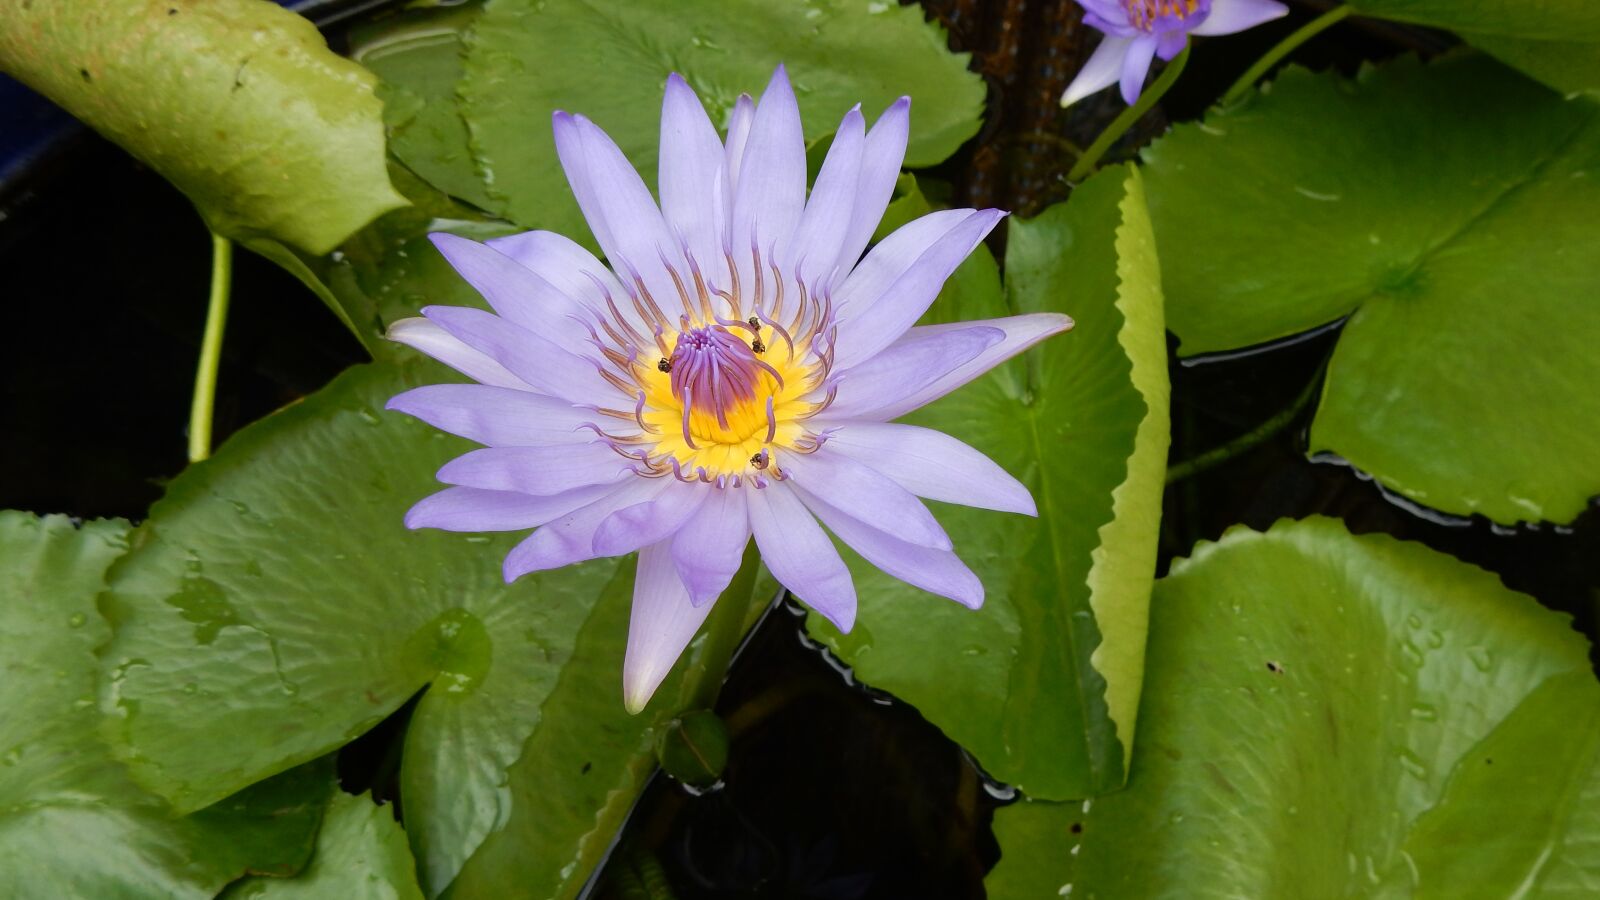 Nikon Coolpix S9900 sample photo. Lotus, lotus flower, lotus photography